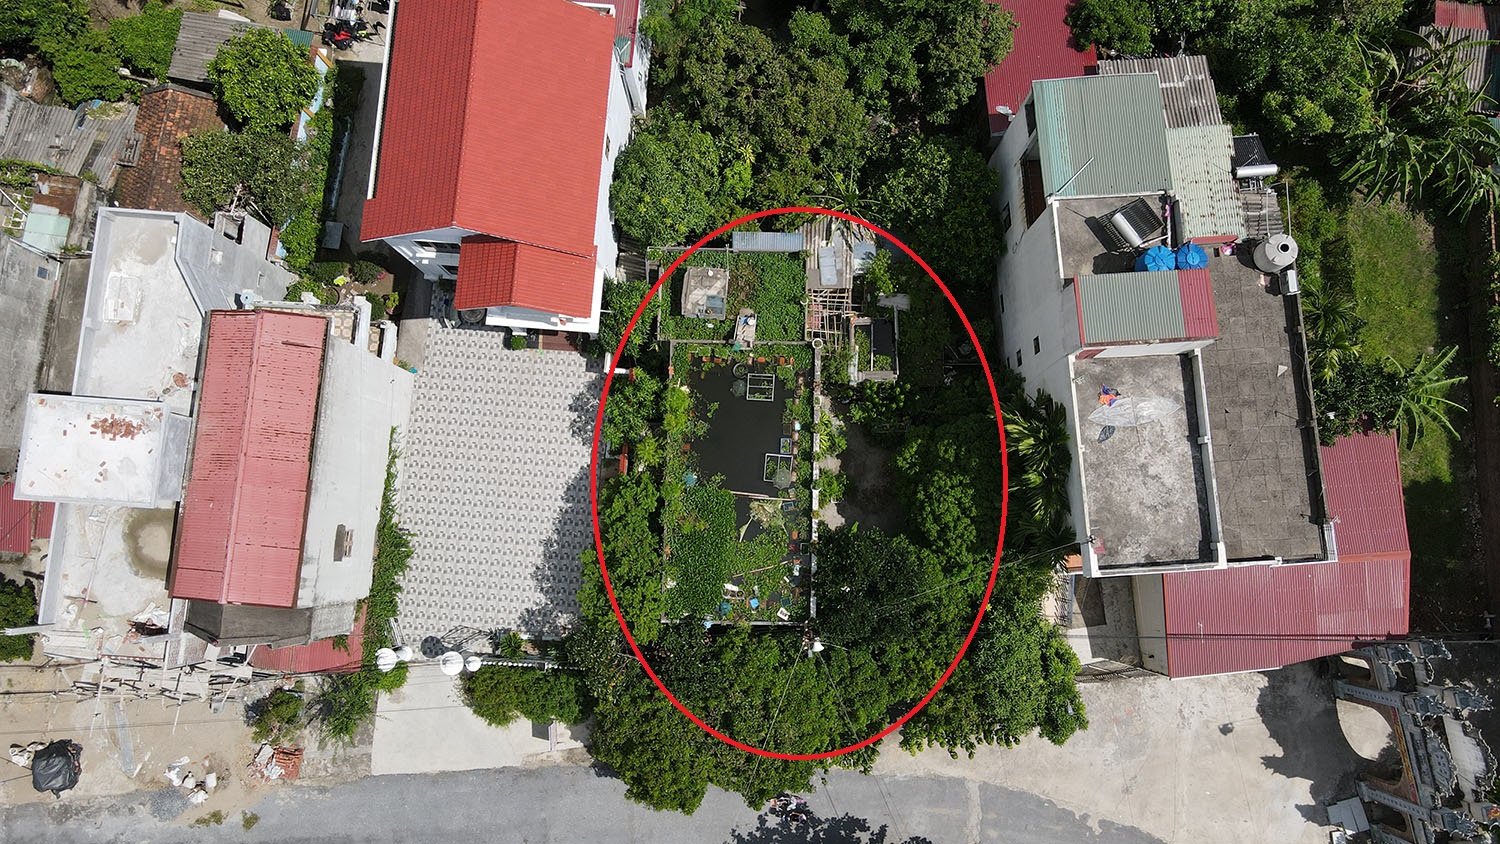 Ngôi nhà mái bằng một tầng của ông Trương Hùng Tuấn (86 tuổi, xã Cao Thắng, huyện Thanh Miện, tỉnh Hải Dương) nằm lọt thỏm giữa những ngôi nhà cao tầng bên cạnh. Tuy nhiên, nó lại nổi bật vì được bao phủ bởi rất nhiều cây xanh